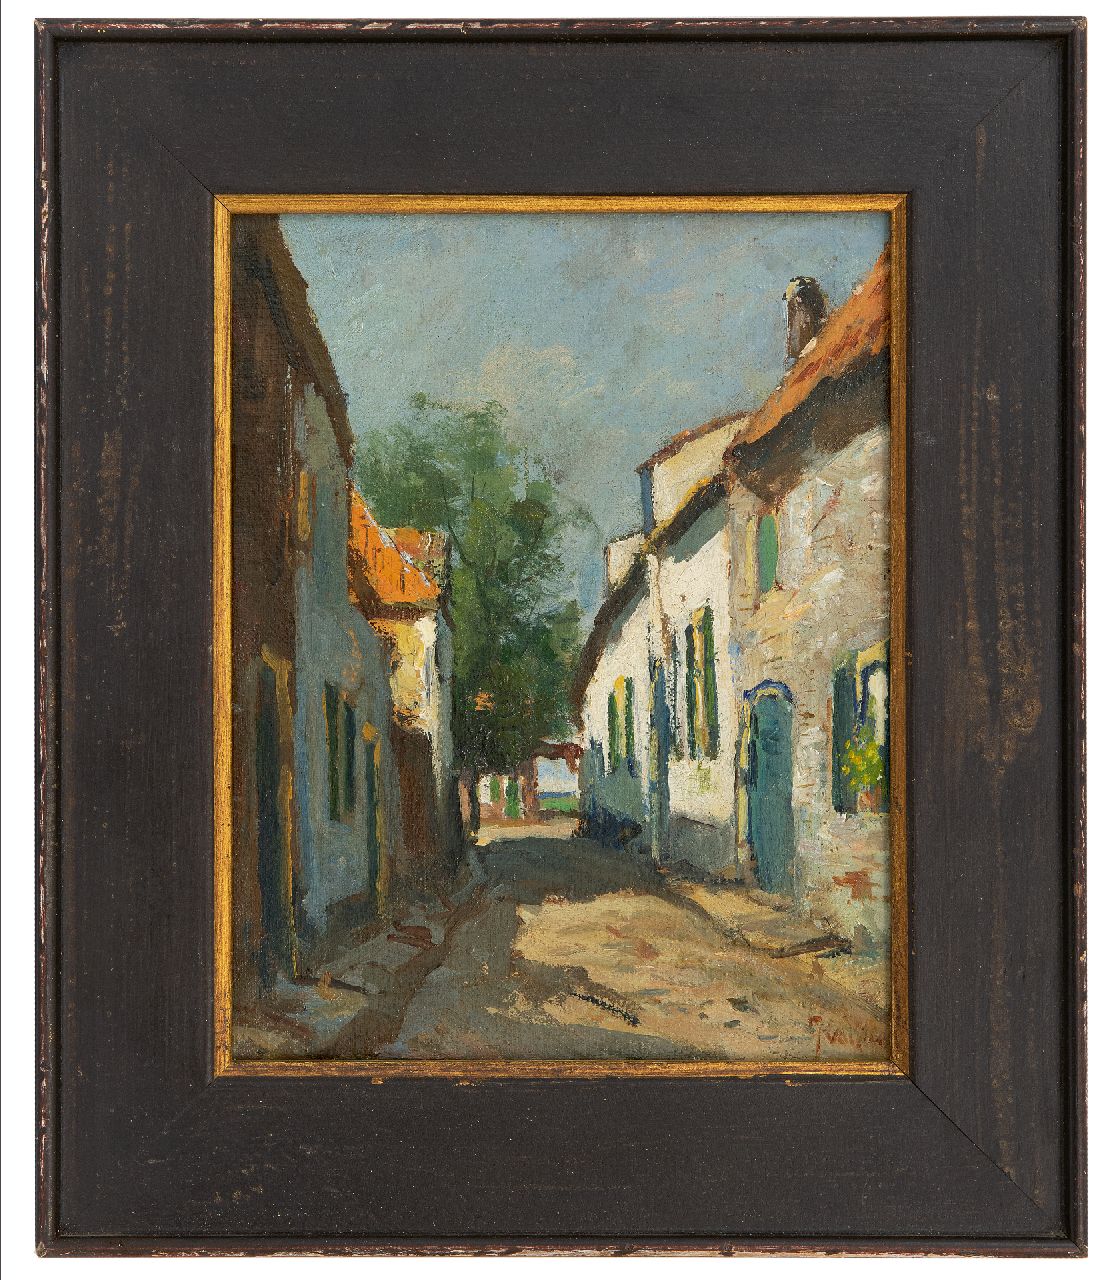 Vuuren J. van | Jan van Vuuren, Village street, oil on canvas 25.5 x 20.1 cm, signed l.r.